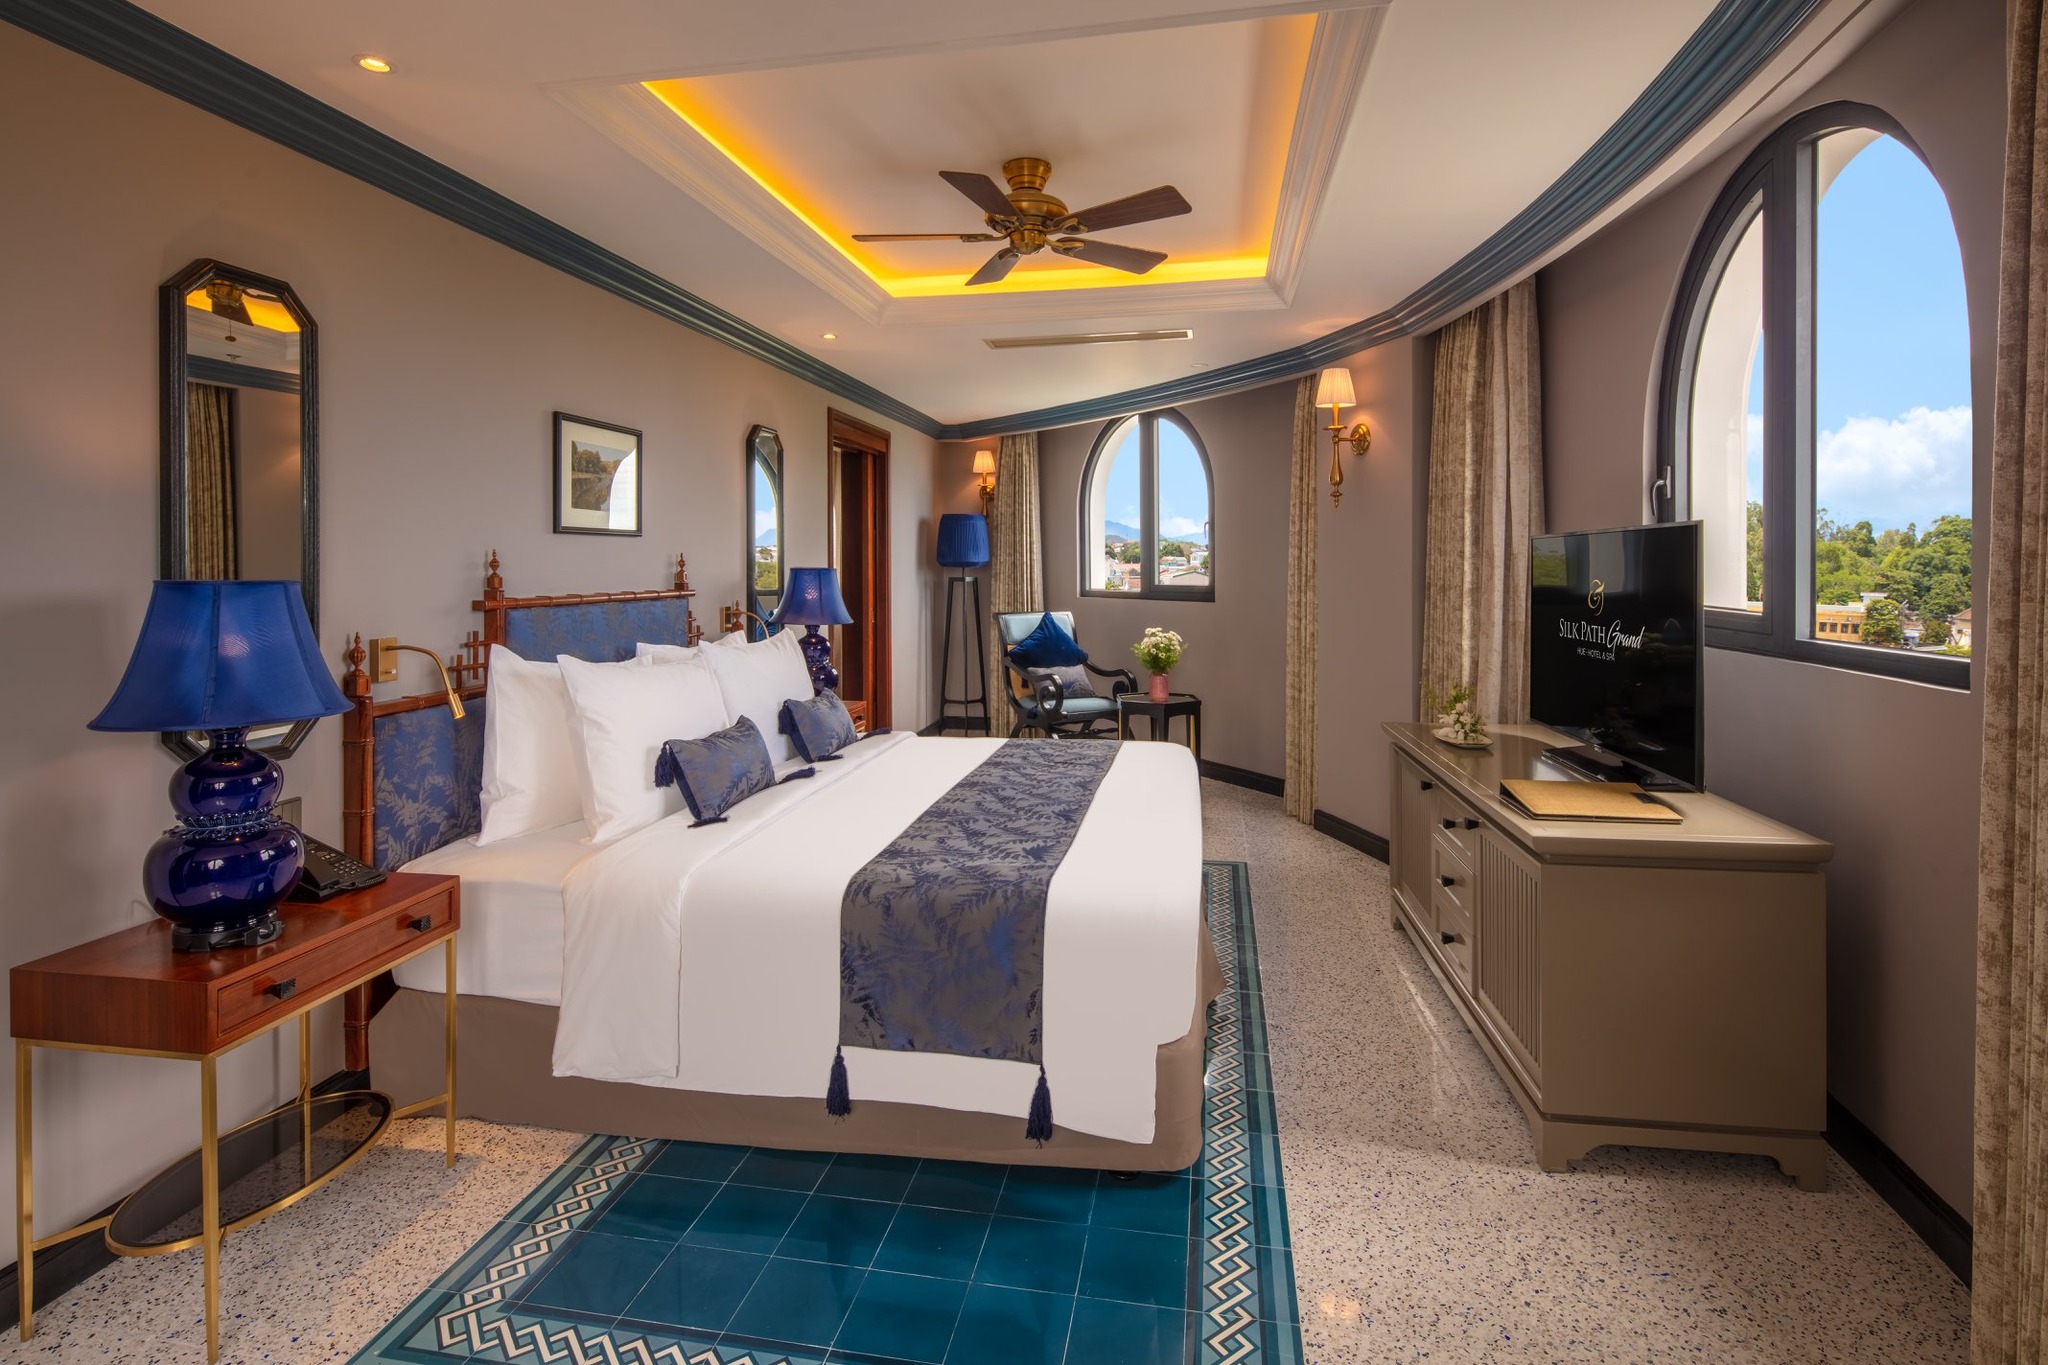 Silk Path Grand Hue Hotel & Spa – Khu nghỉ dưỡng cao cấp “vượt thời gian” giữa đất cố đô 7